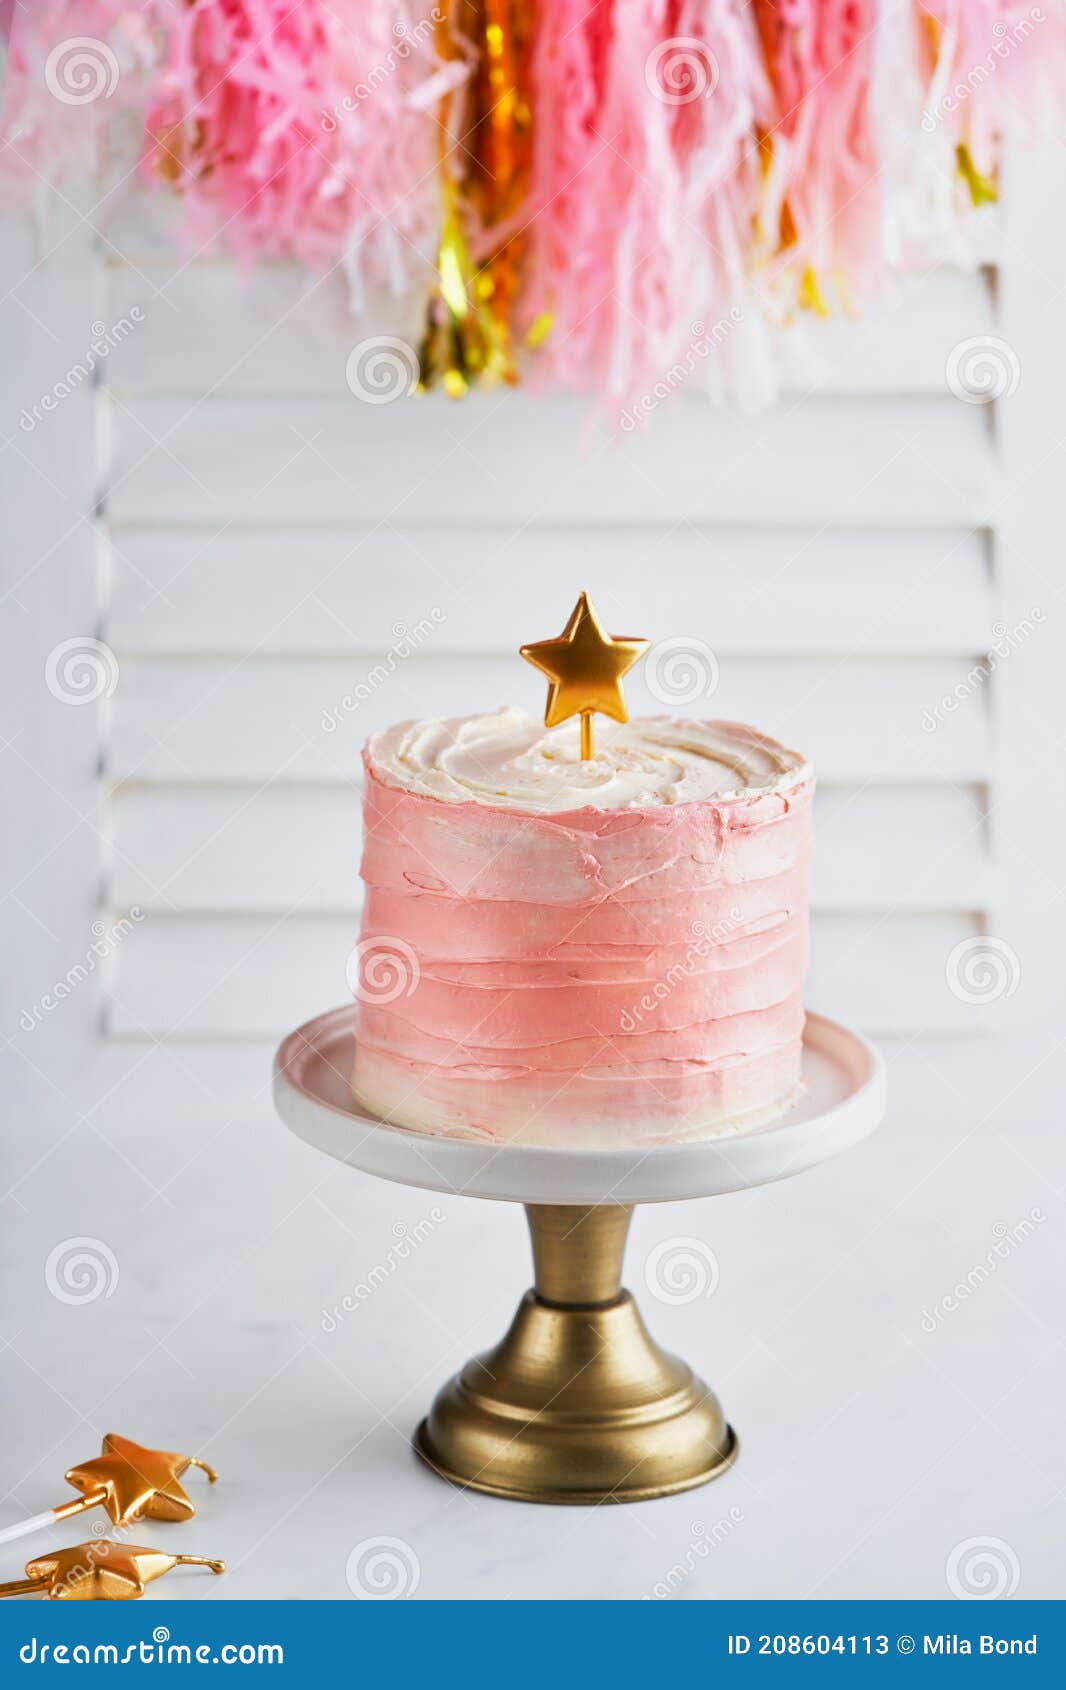 Bánh kem hồng với đèn nến: Bạn đang tìm kiếm một món quà sinh nhật đặc biệt để thể hiện tình cảm của mình? Bánh kem hồng với đèn nến chắc chắn sẽ làm hài lòng bạn. Hãy nhấp vào hình ảnh để thấy sự kết hợp hoàn hảo giữa ánh sáng và hương vị trên bánh kem.